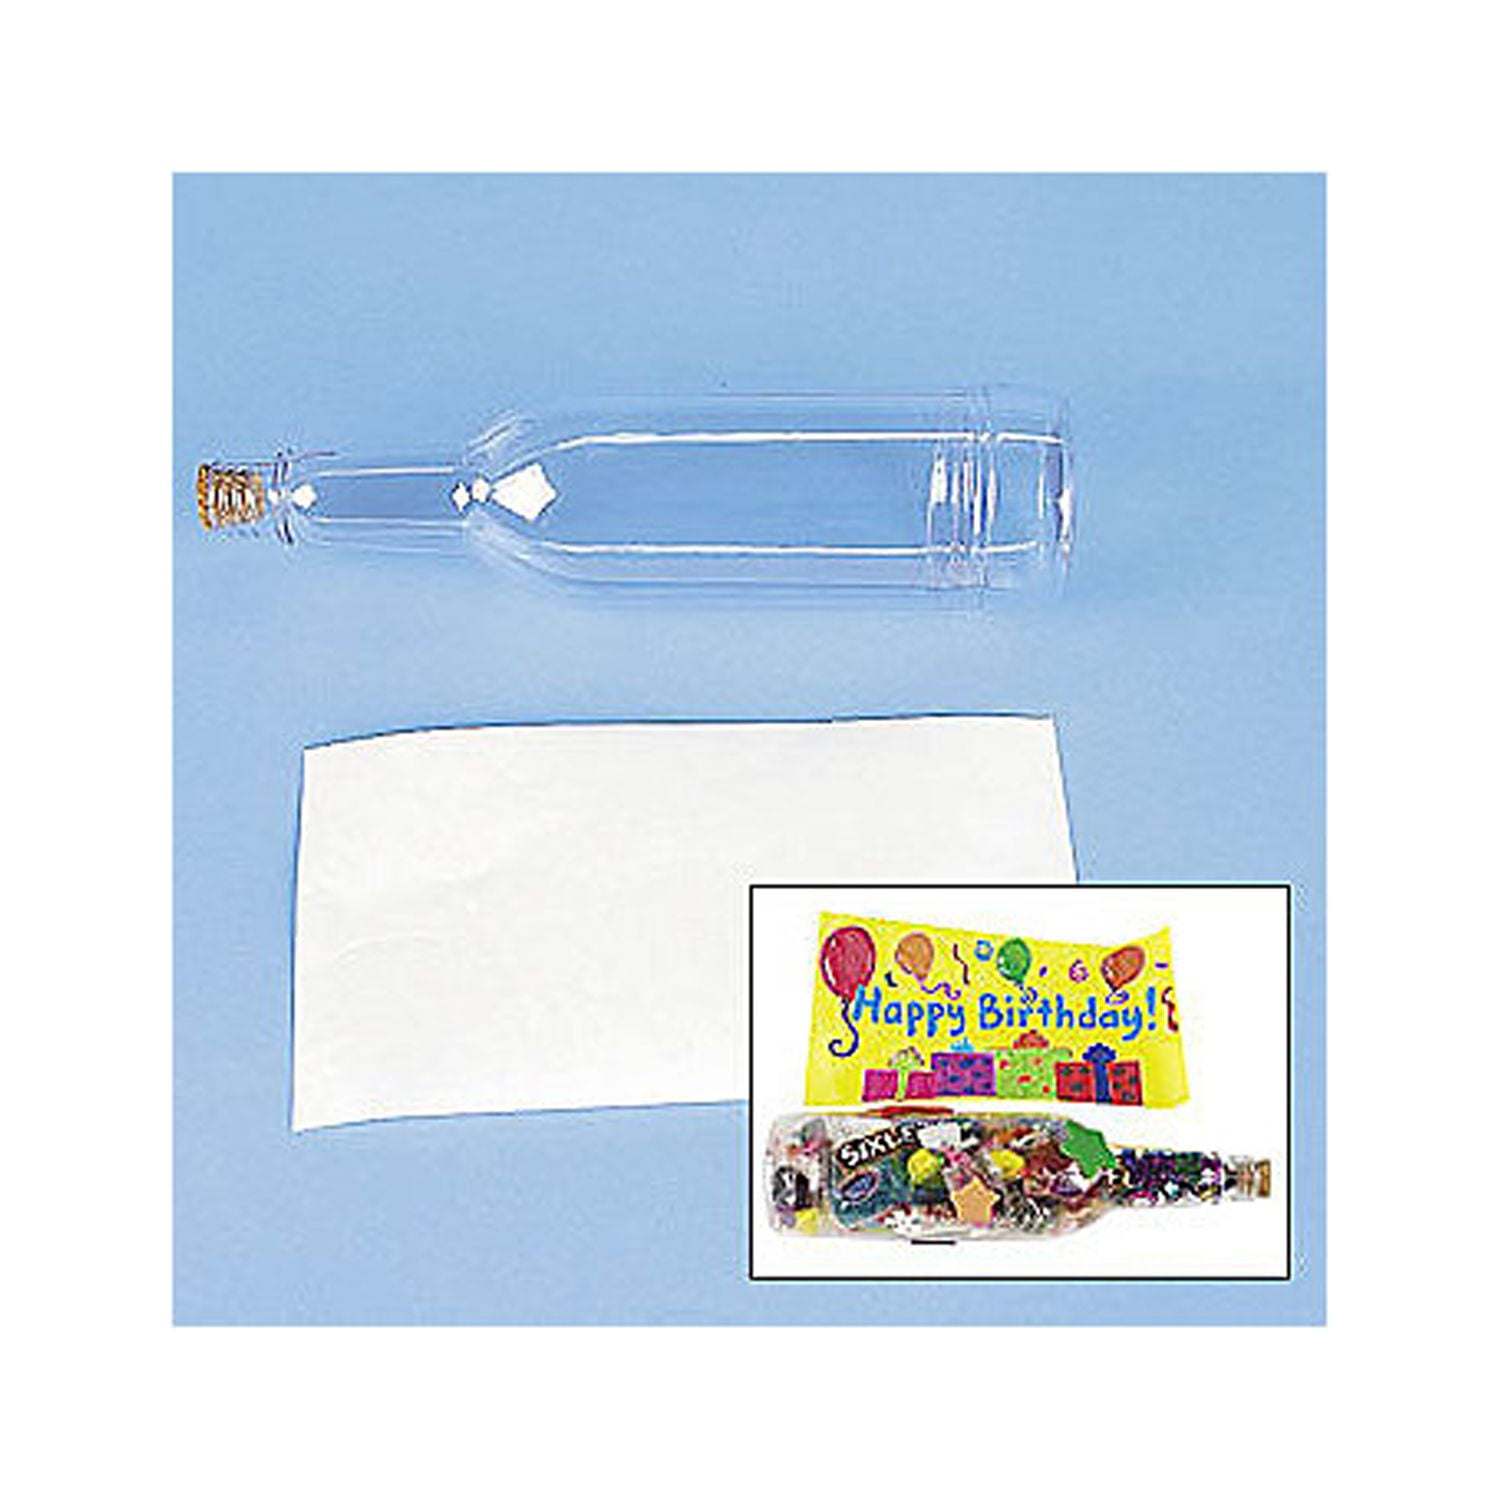 World in a Bottle Handmade DIY for Kids, Drawing Kit, Material Kit